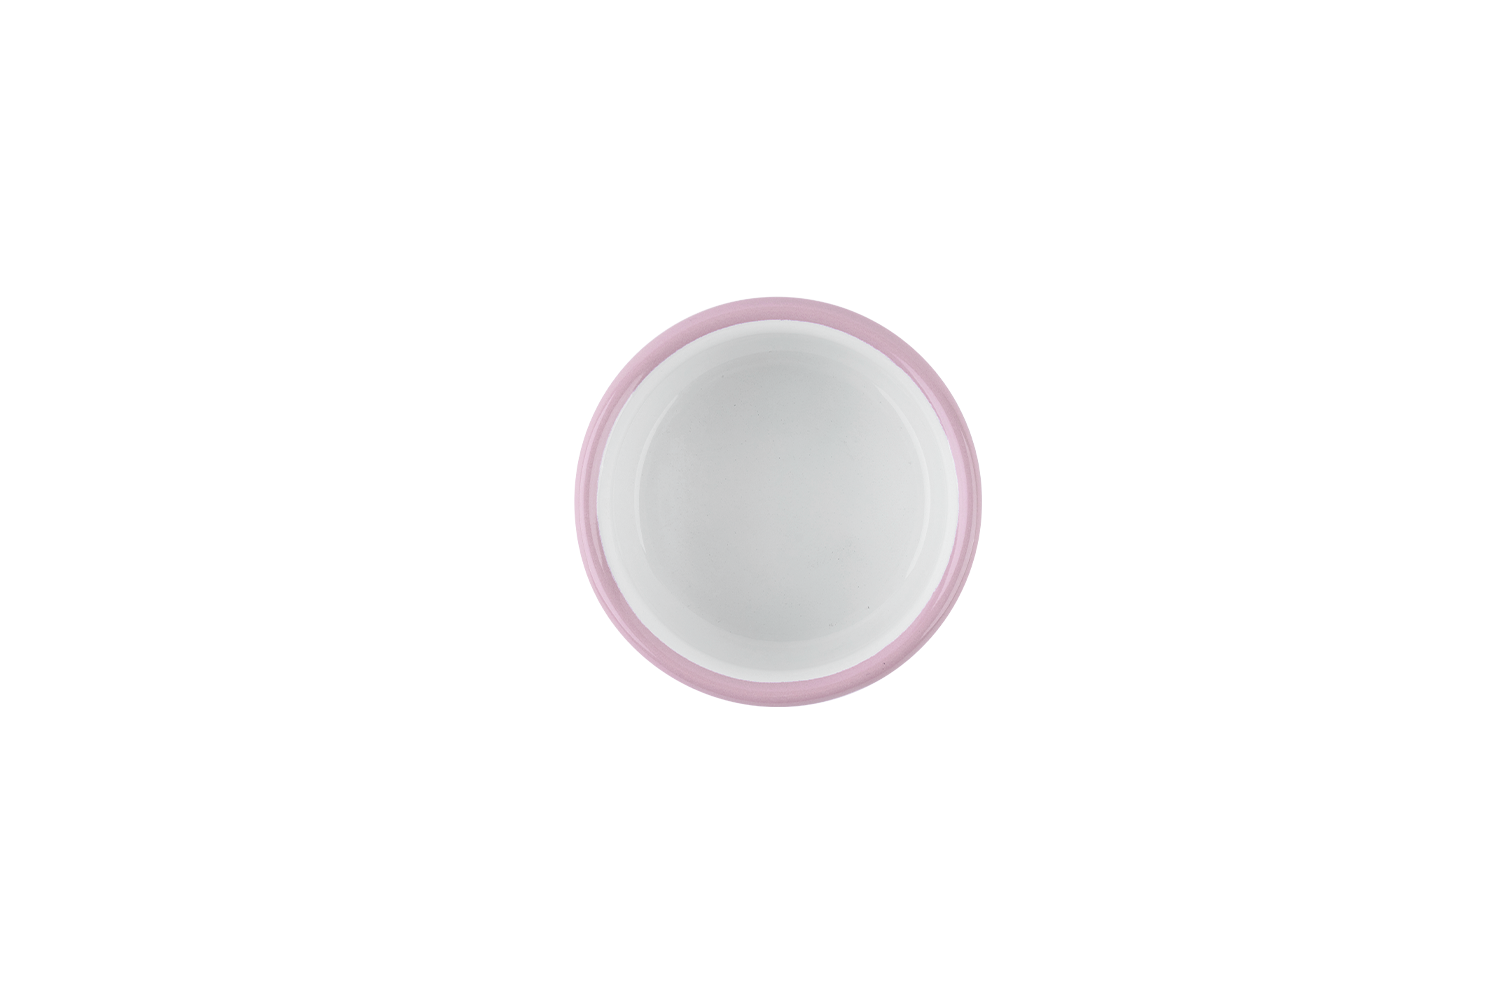 Blick ins weiße Innere des rosafarbenen Mini-Tapas-Schälchens